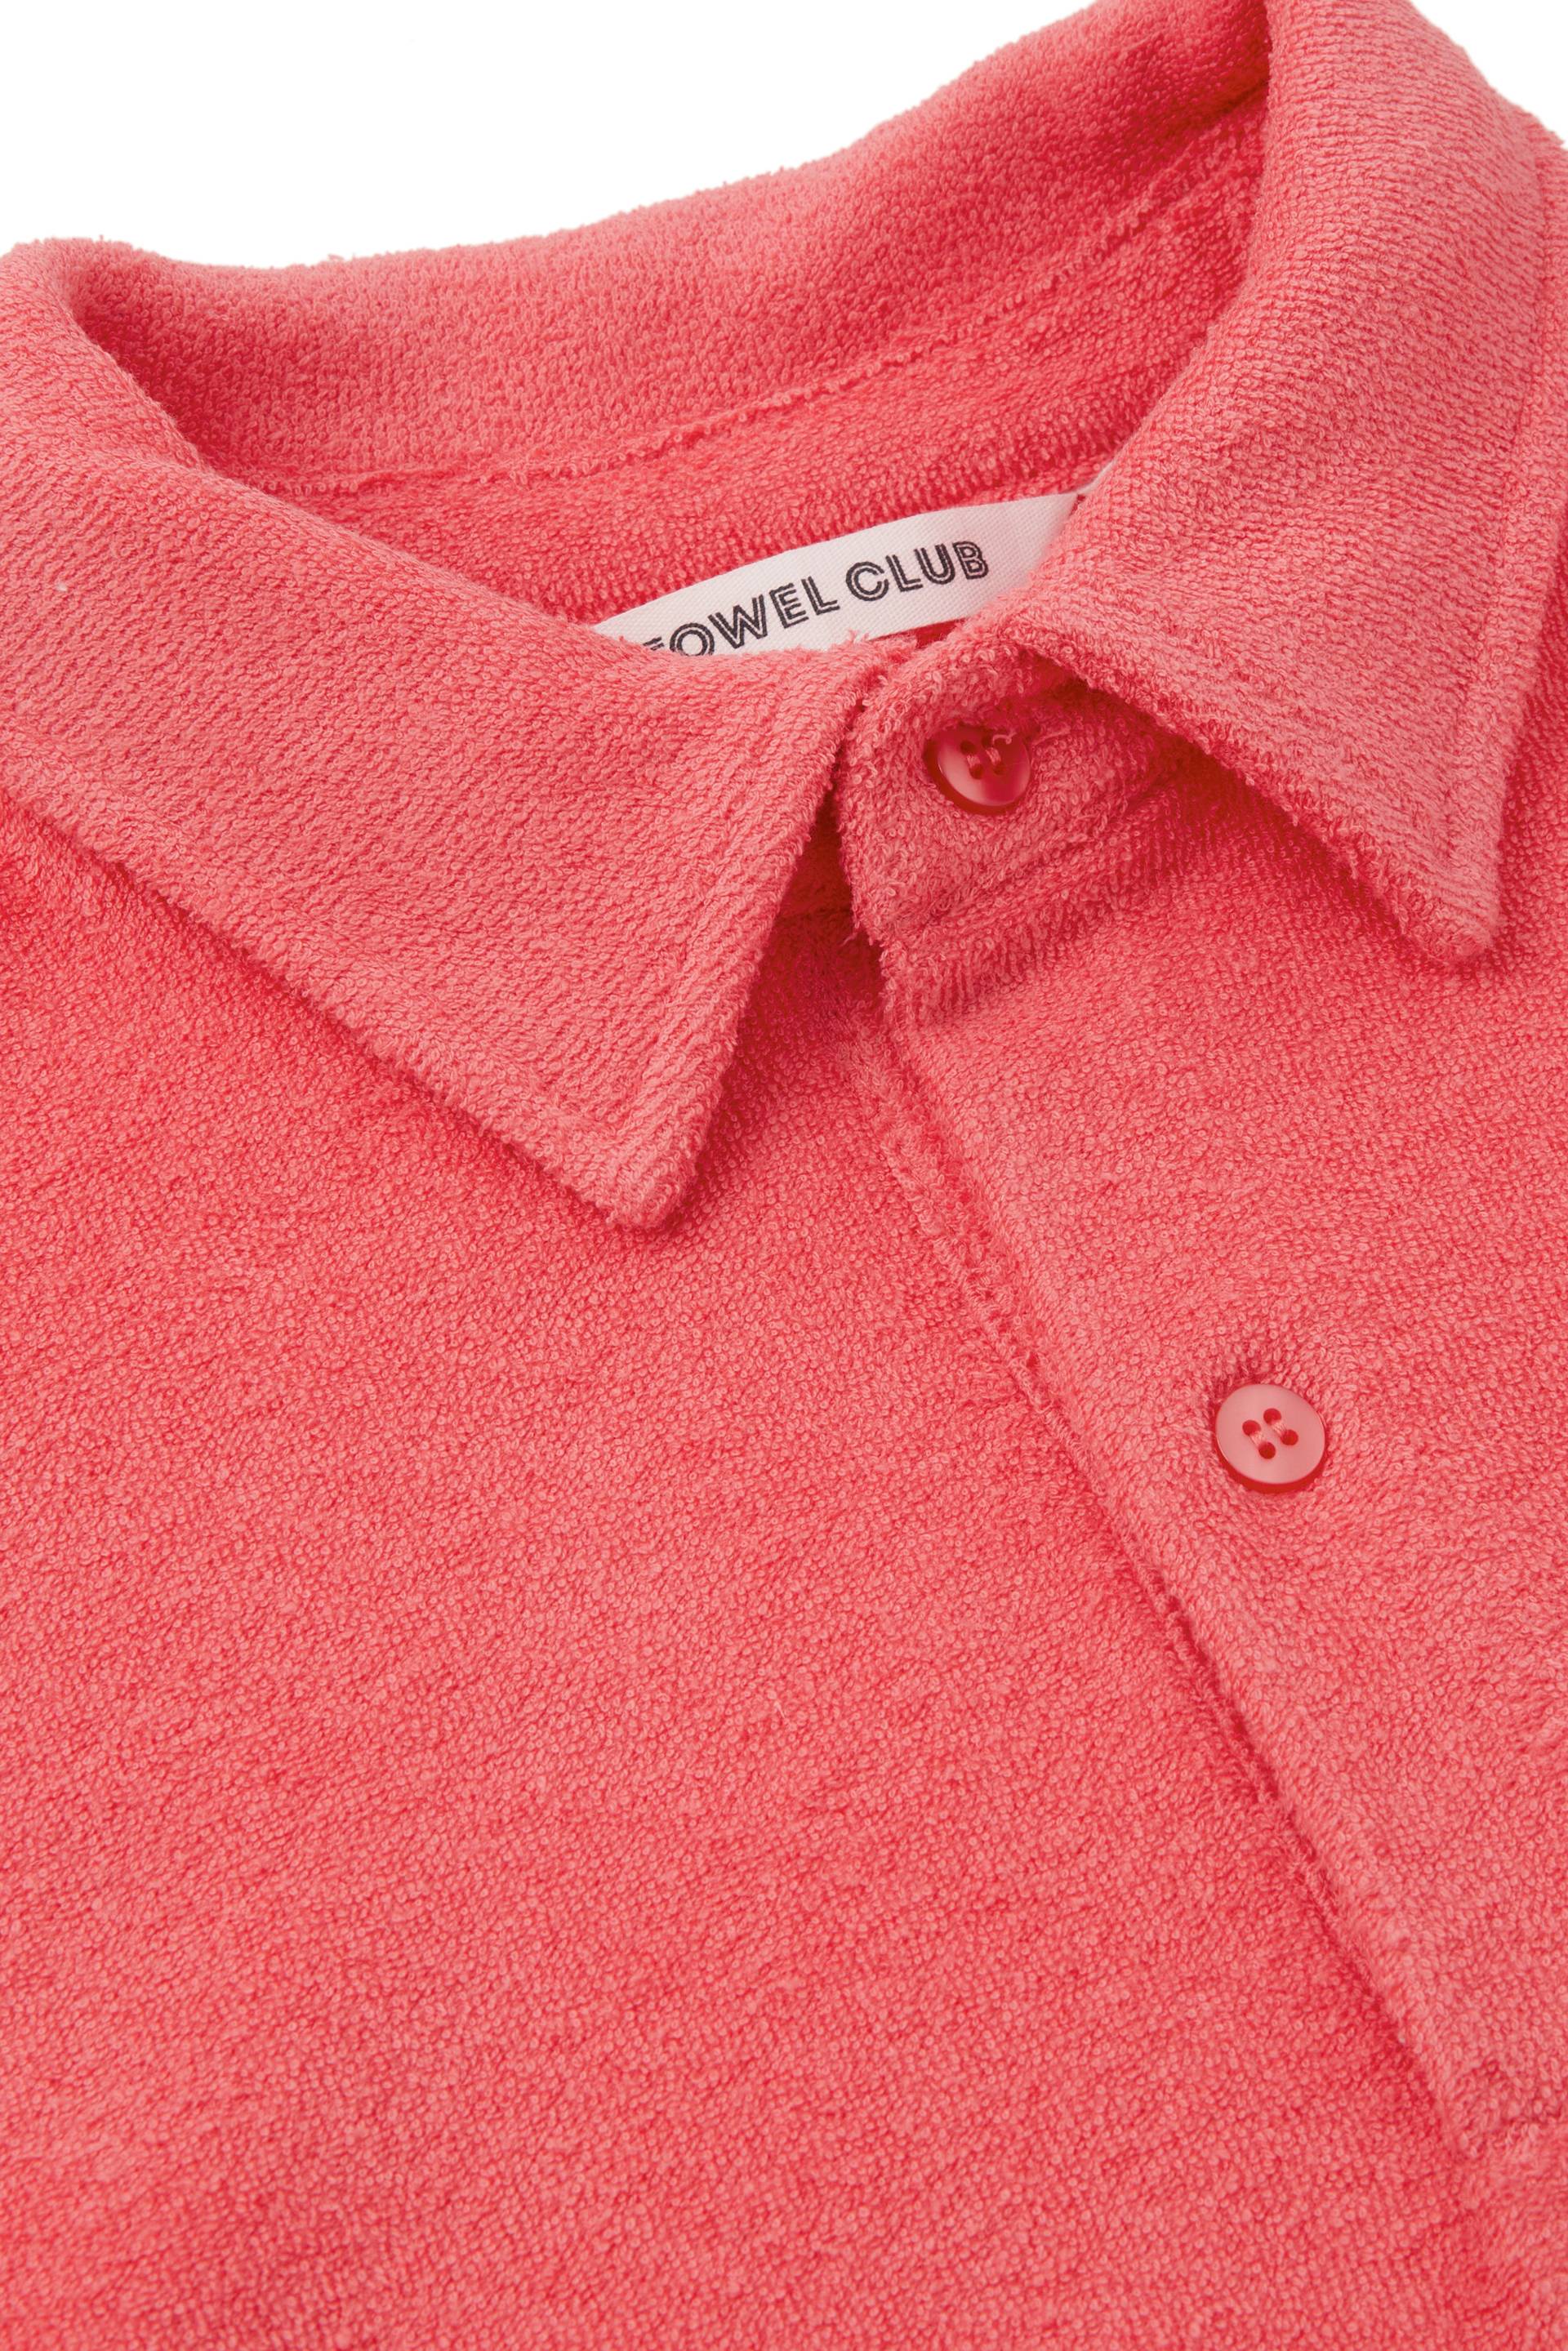 Towel Club Towel Club Piquet Tshirt Coral - 3